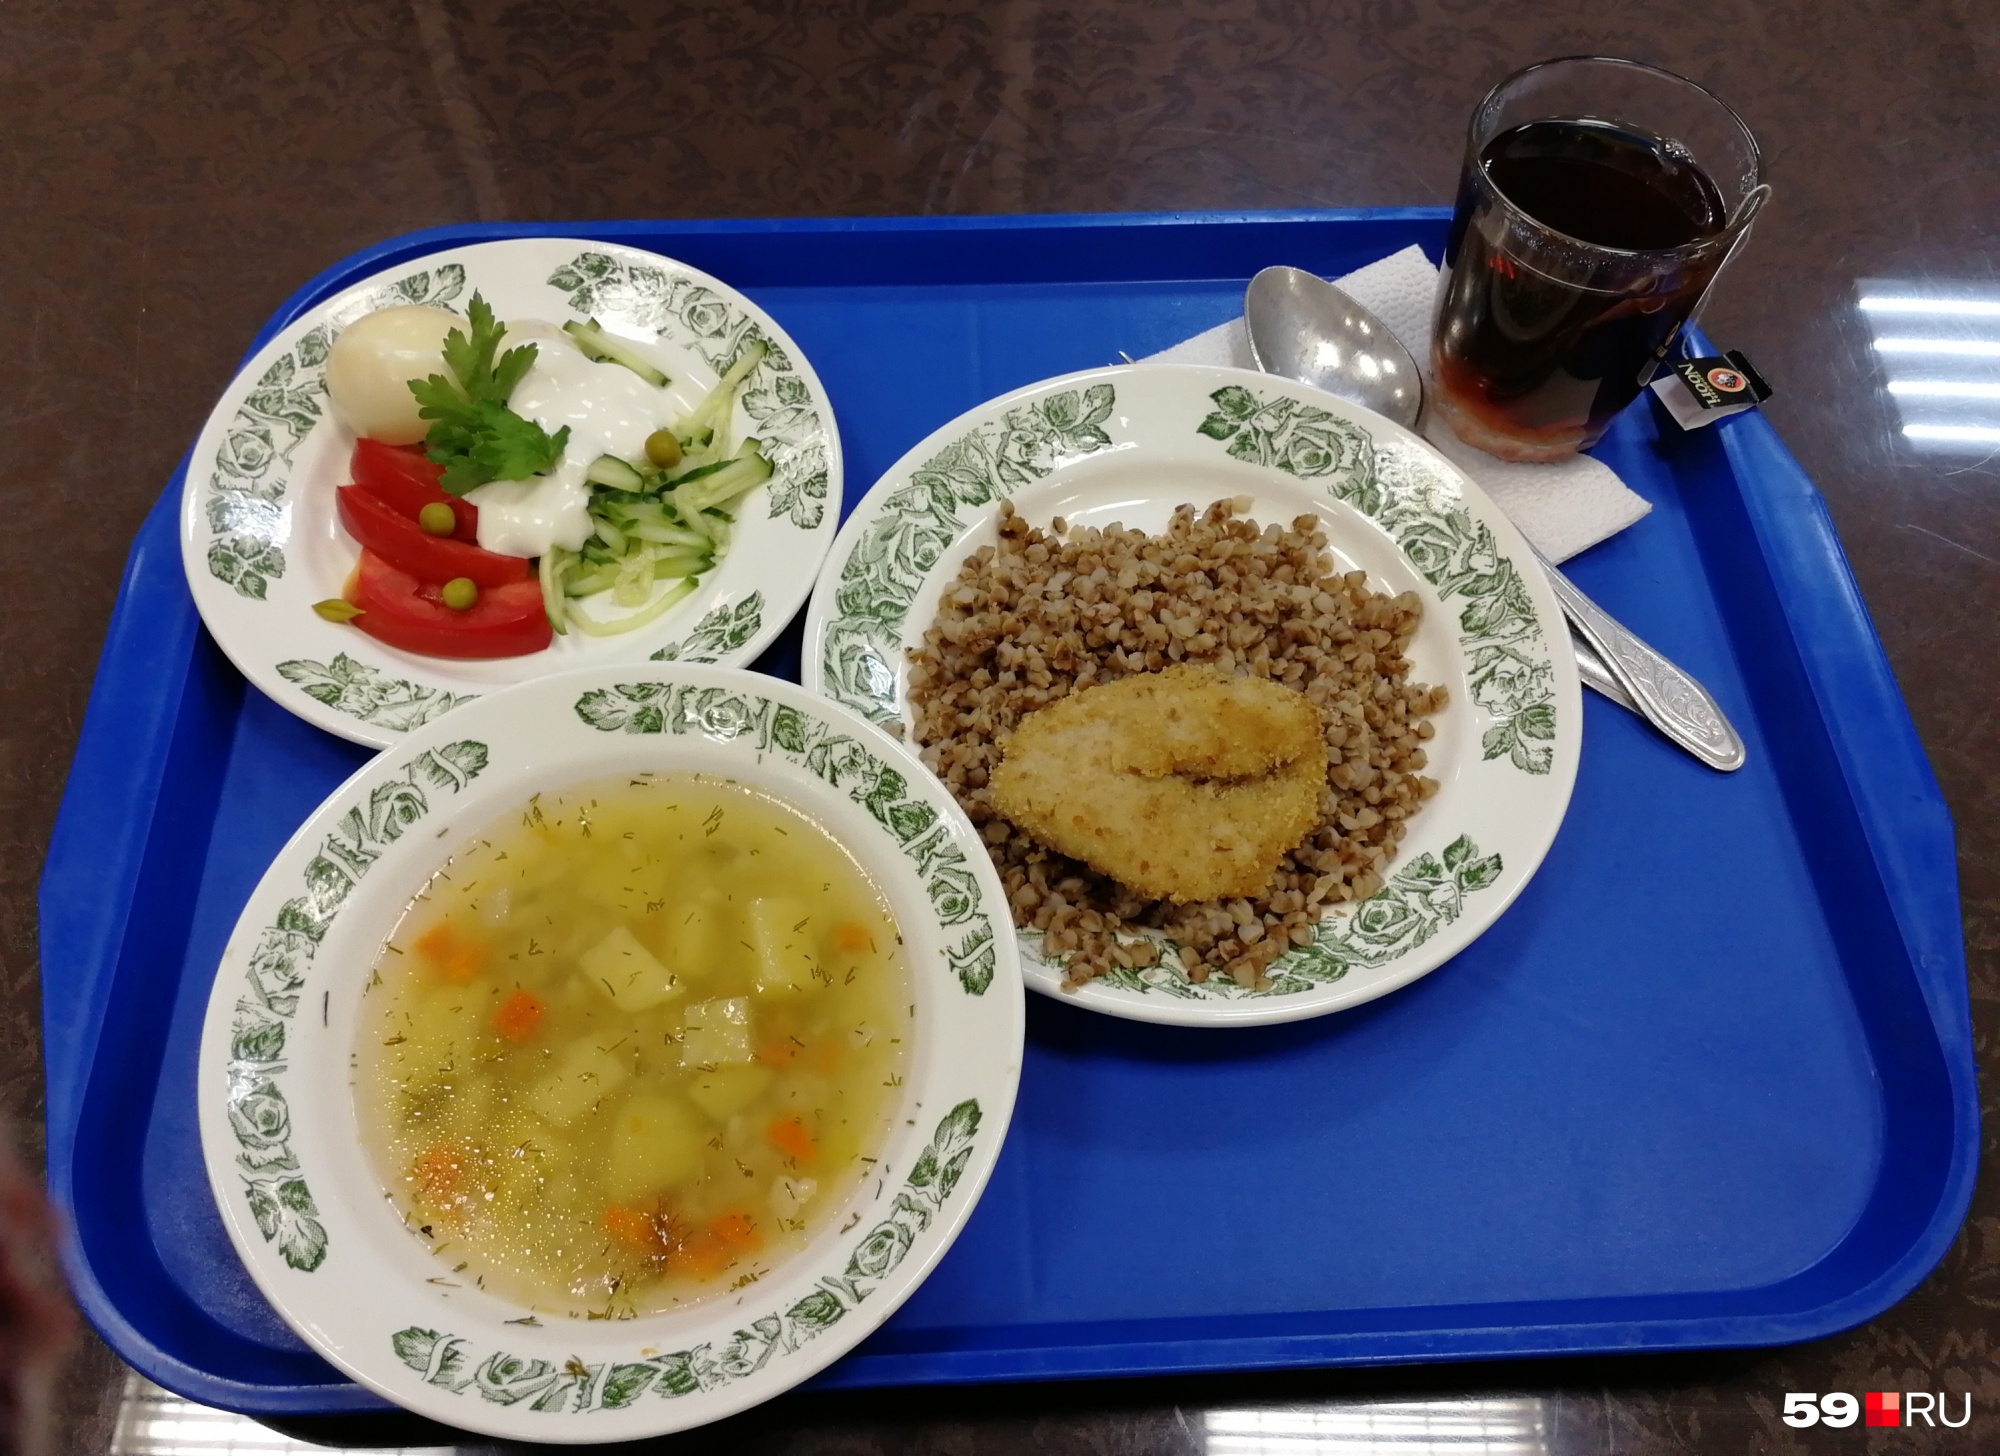 Комплексный обед плюс салат — все вместе стоит меньше 140 рублей